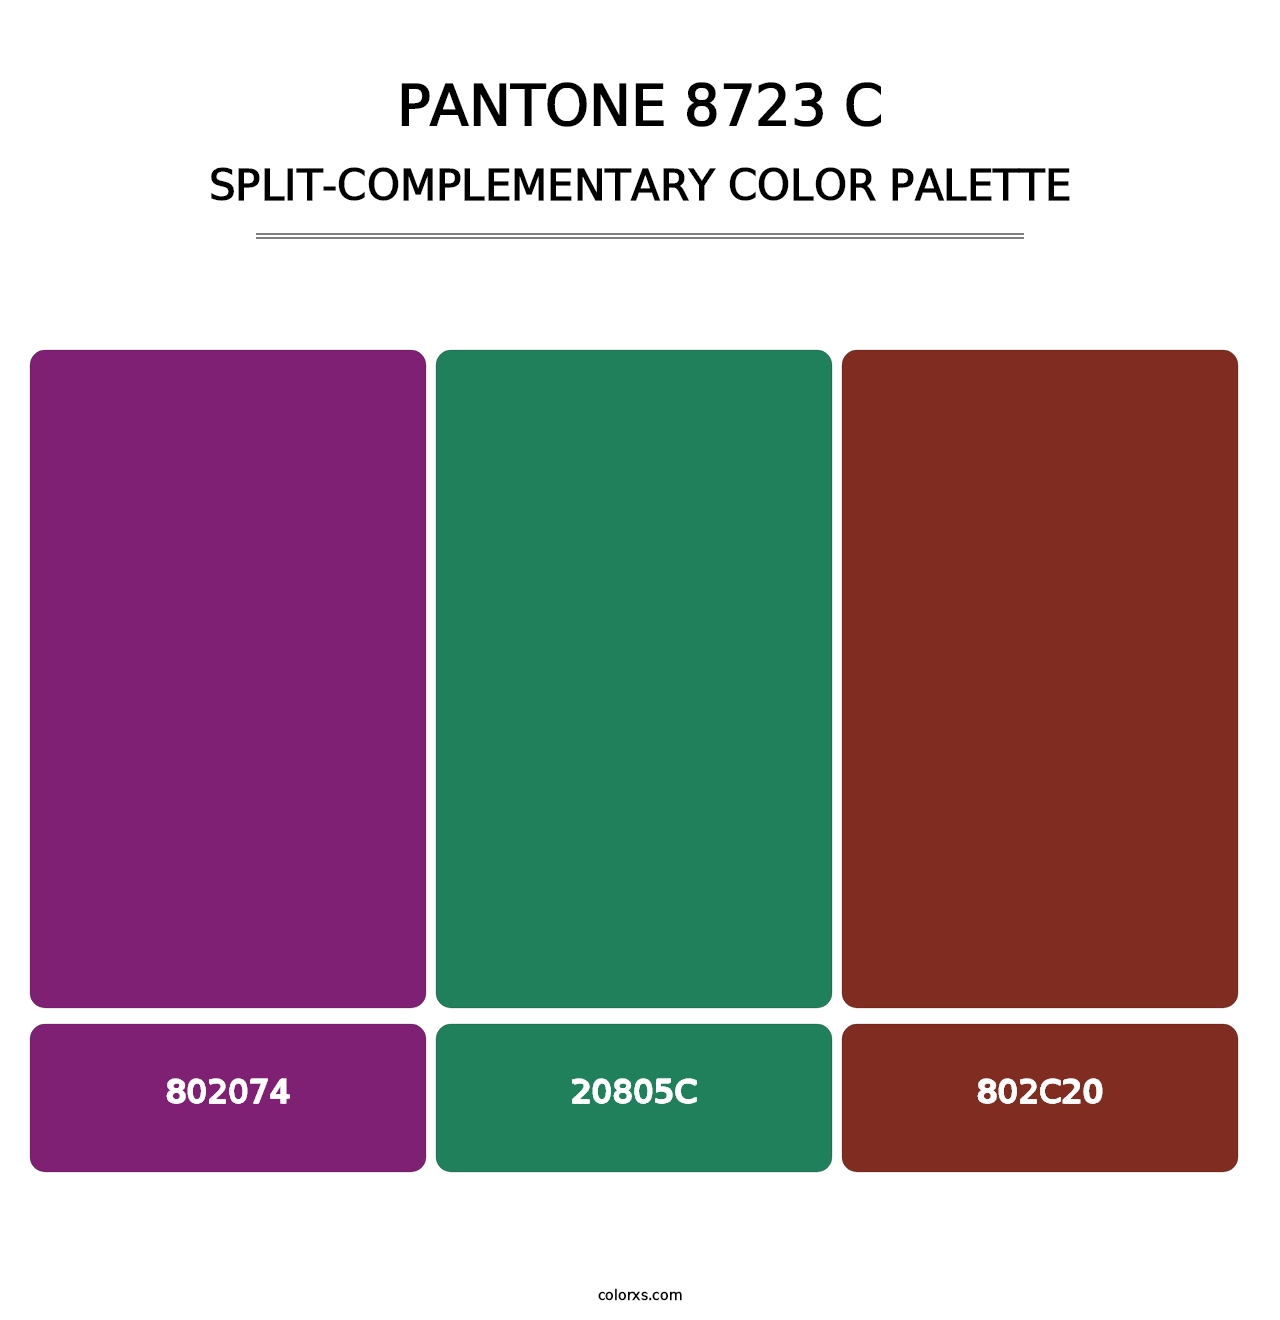 PANTONE 8723 C - Split-Complementary Color Palette